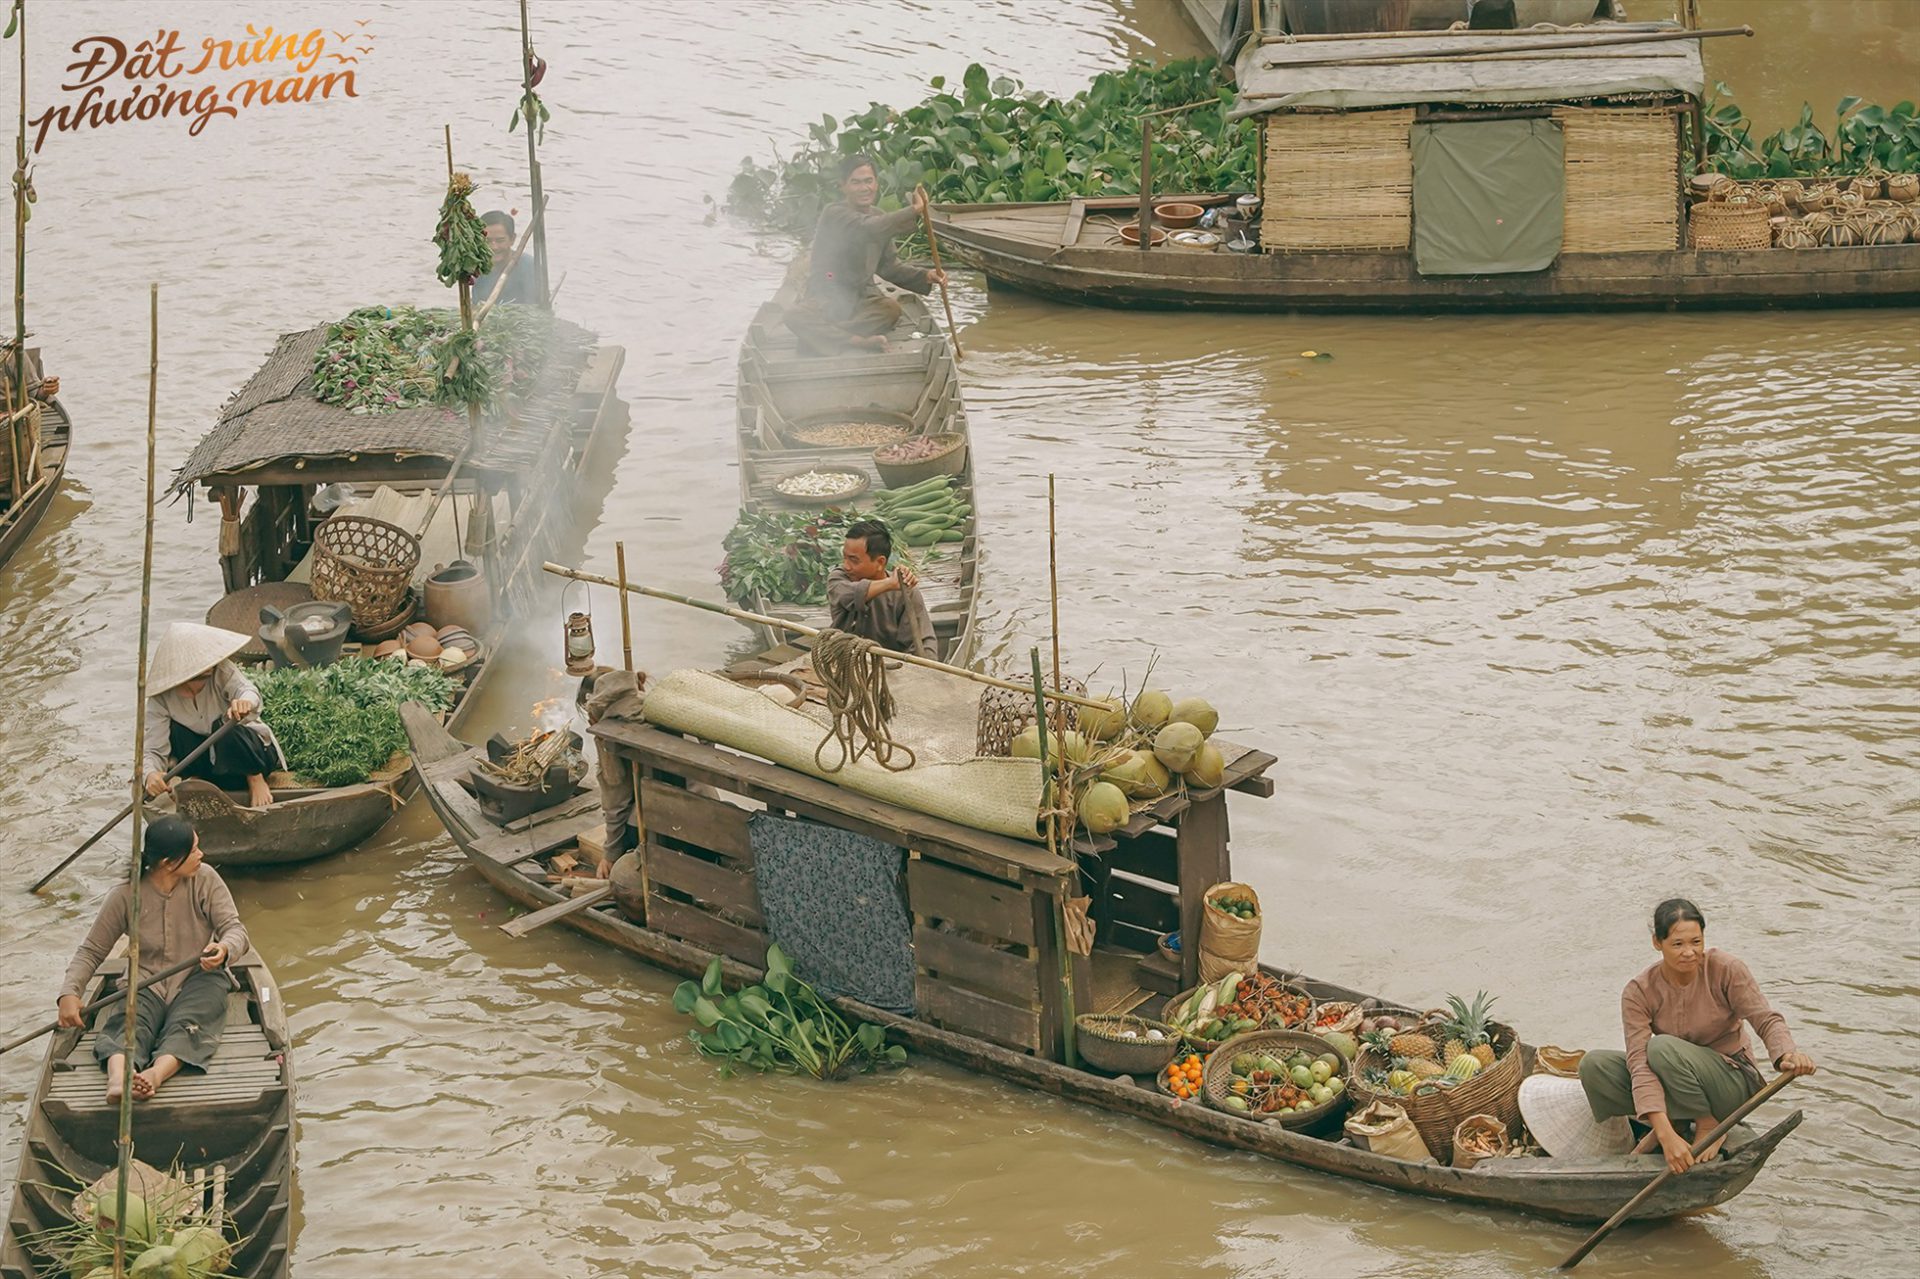 Hệ thống kênh rạch của rừng tràm cũng giúp đoàn làm phim dàn cảnh hàng chục chiếc ghe thuyền tập hợp, làm nên một chợ nổi đậm chất miền Tây.